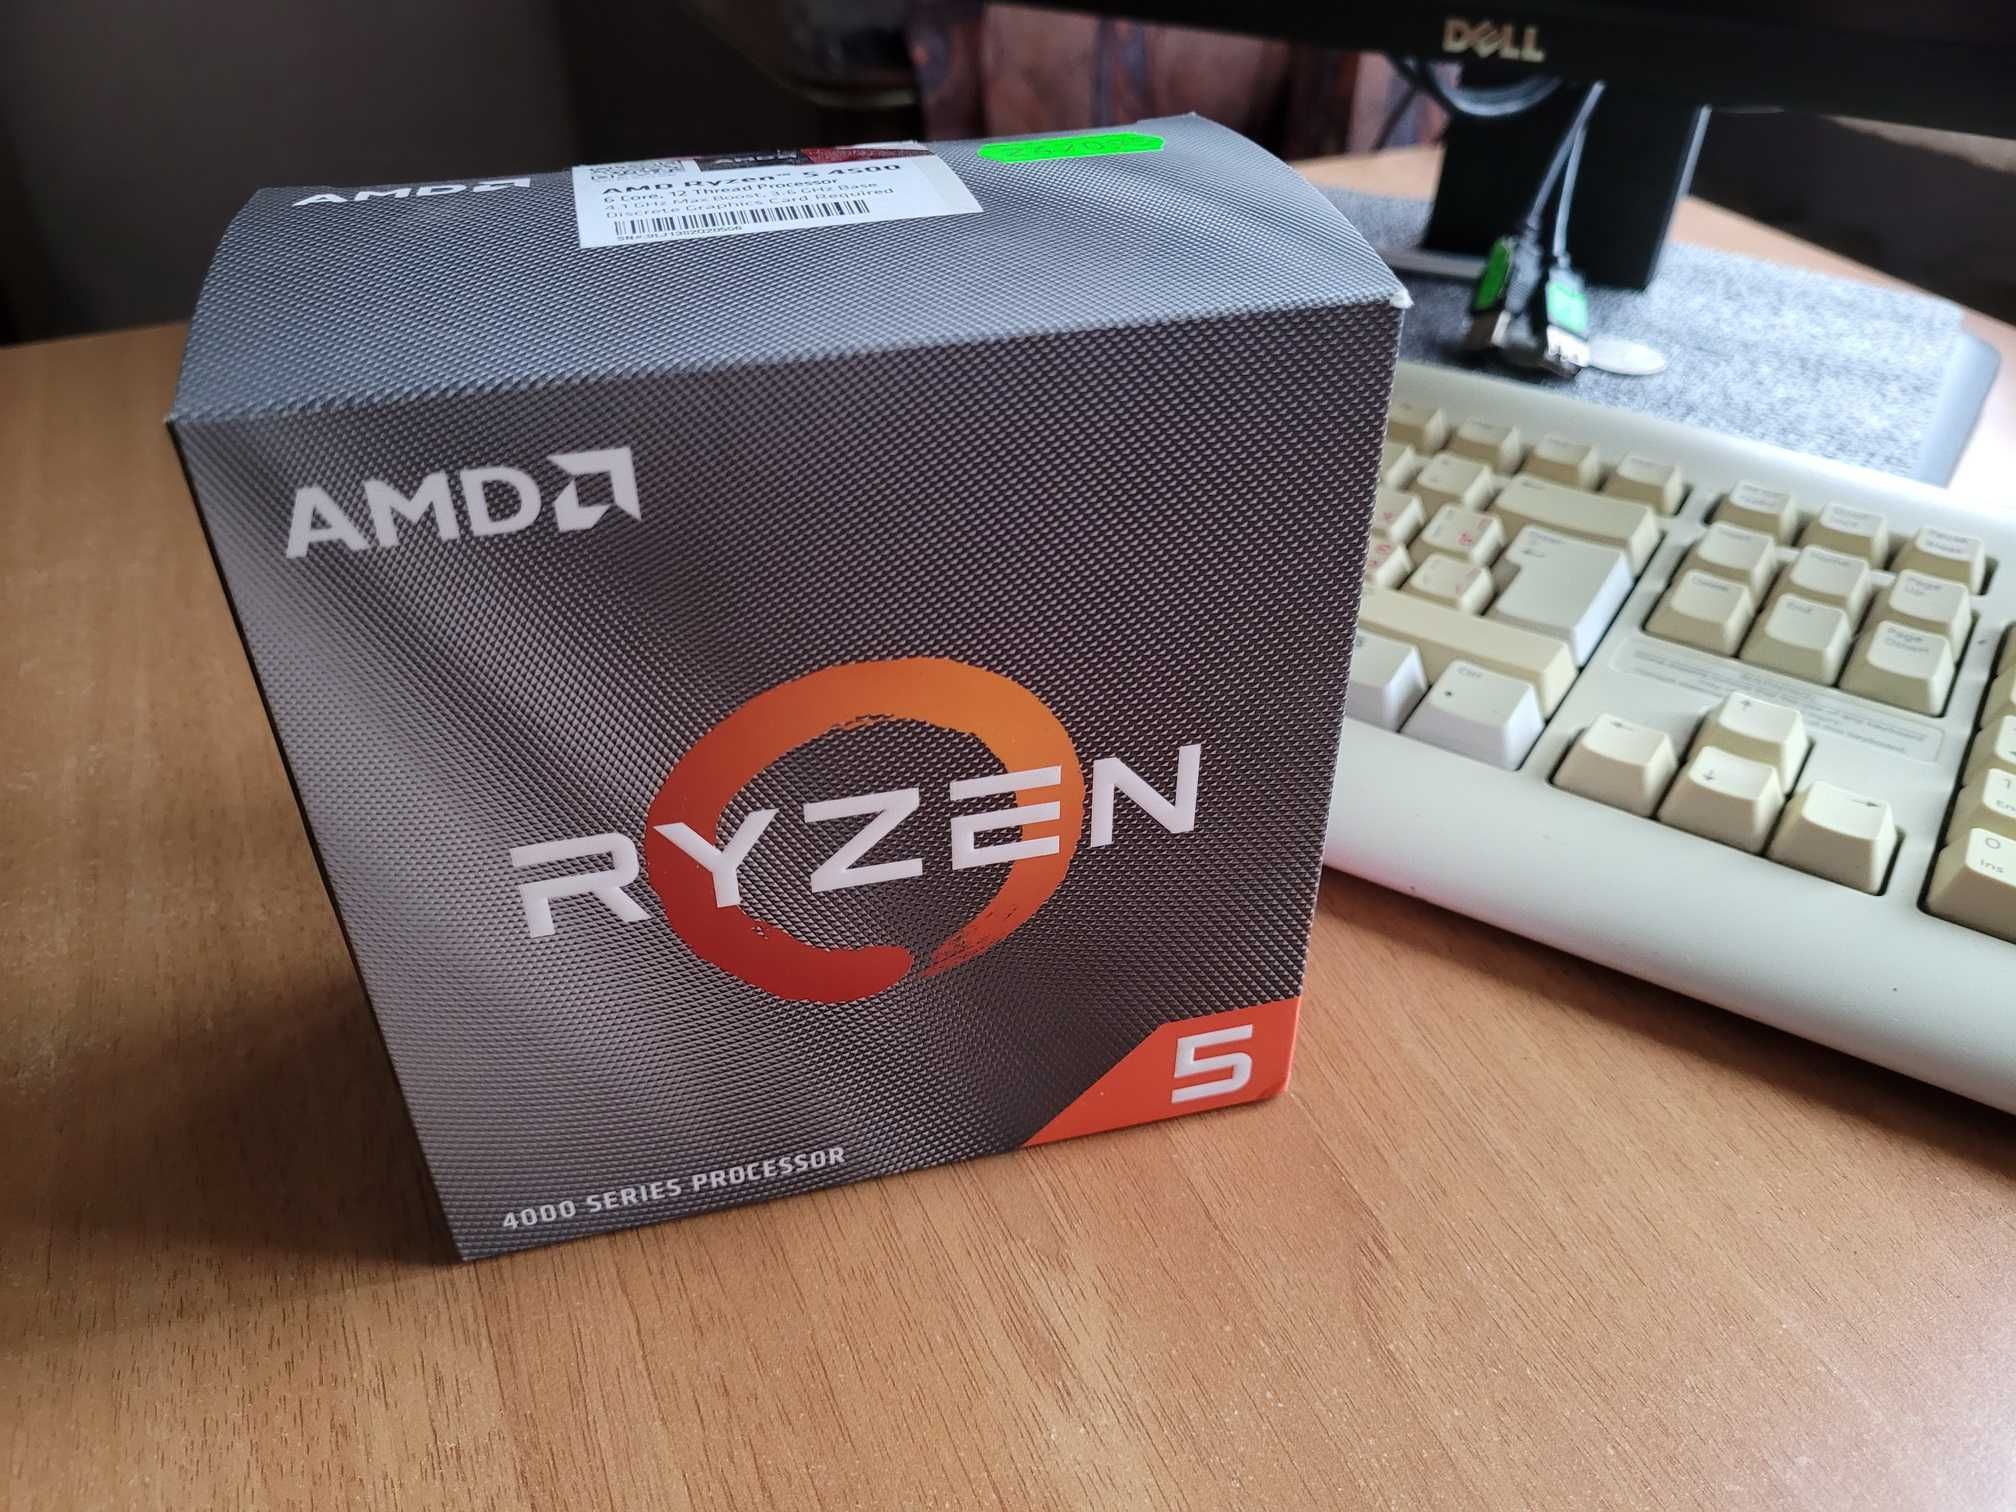 Процессор AMD Ryzen 5 4500 box, новый в упаковке. Соберу ПК на заказ.